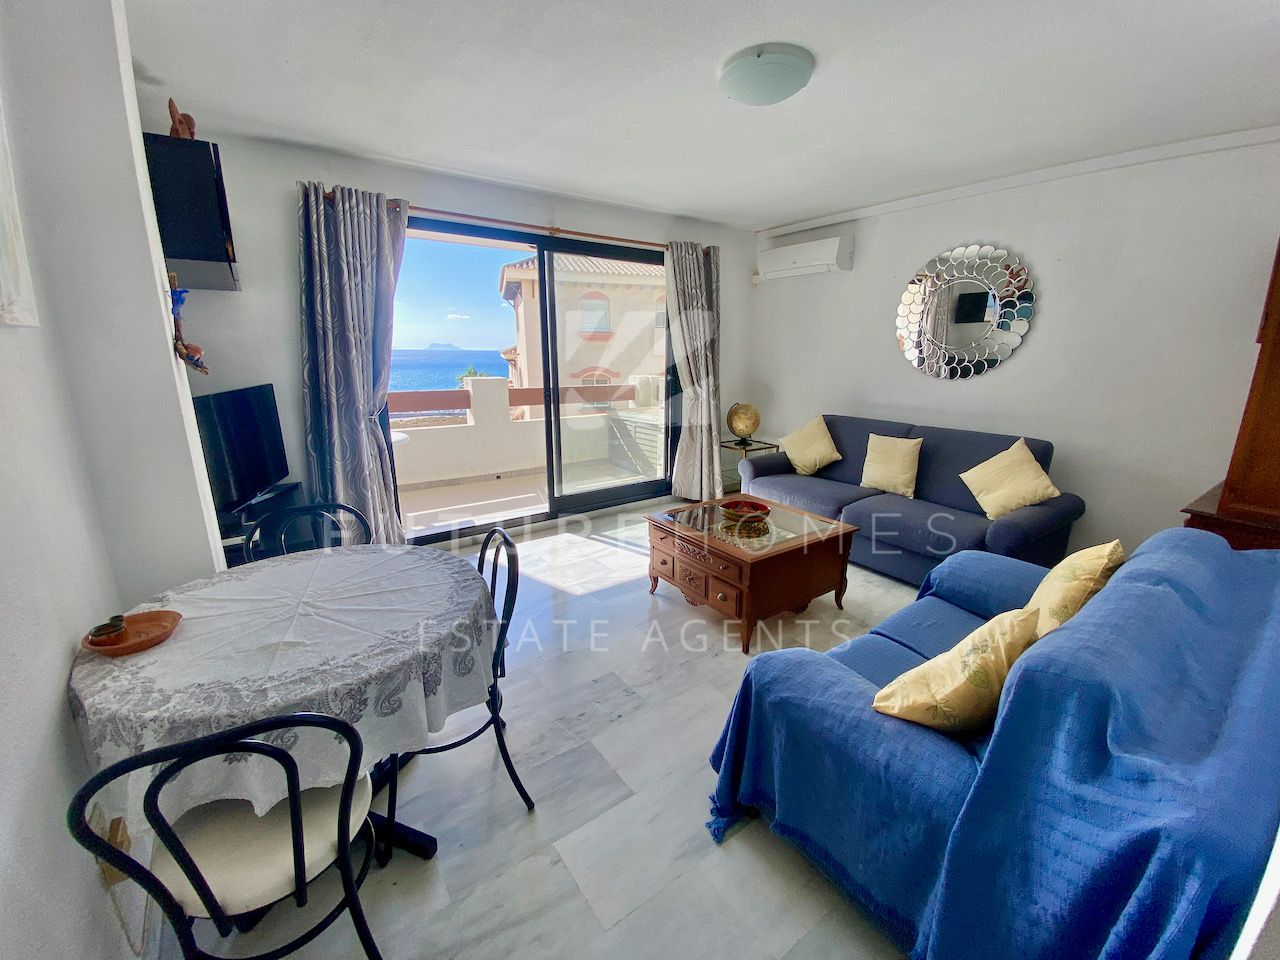 Super renovated apartment next to Estepona port and beaches.